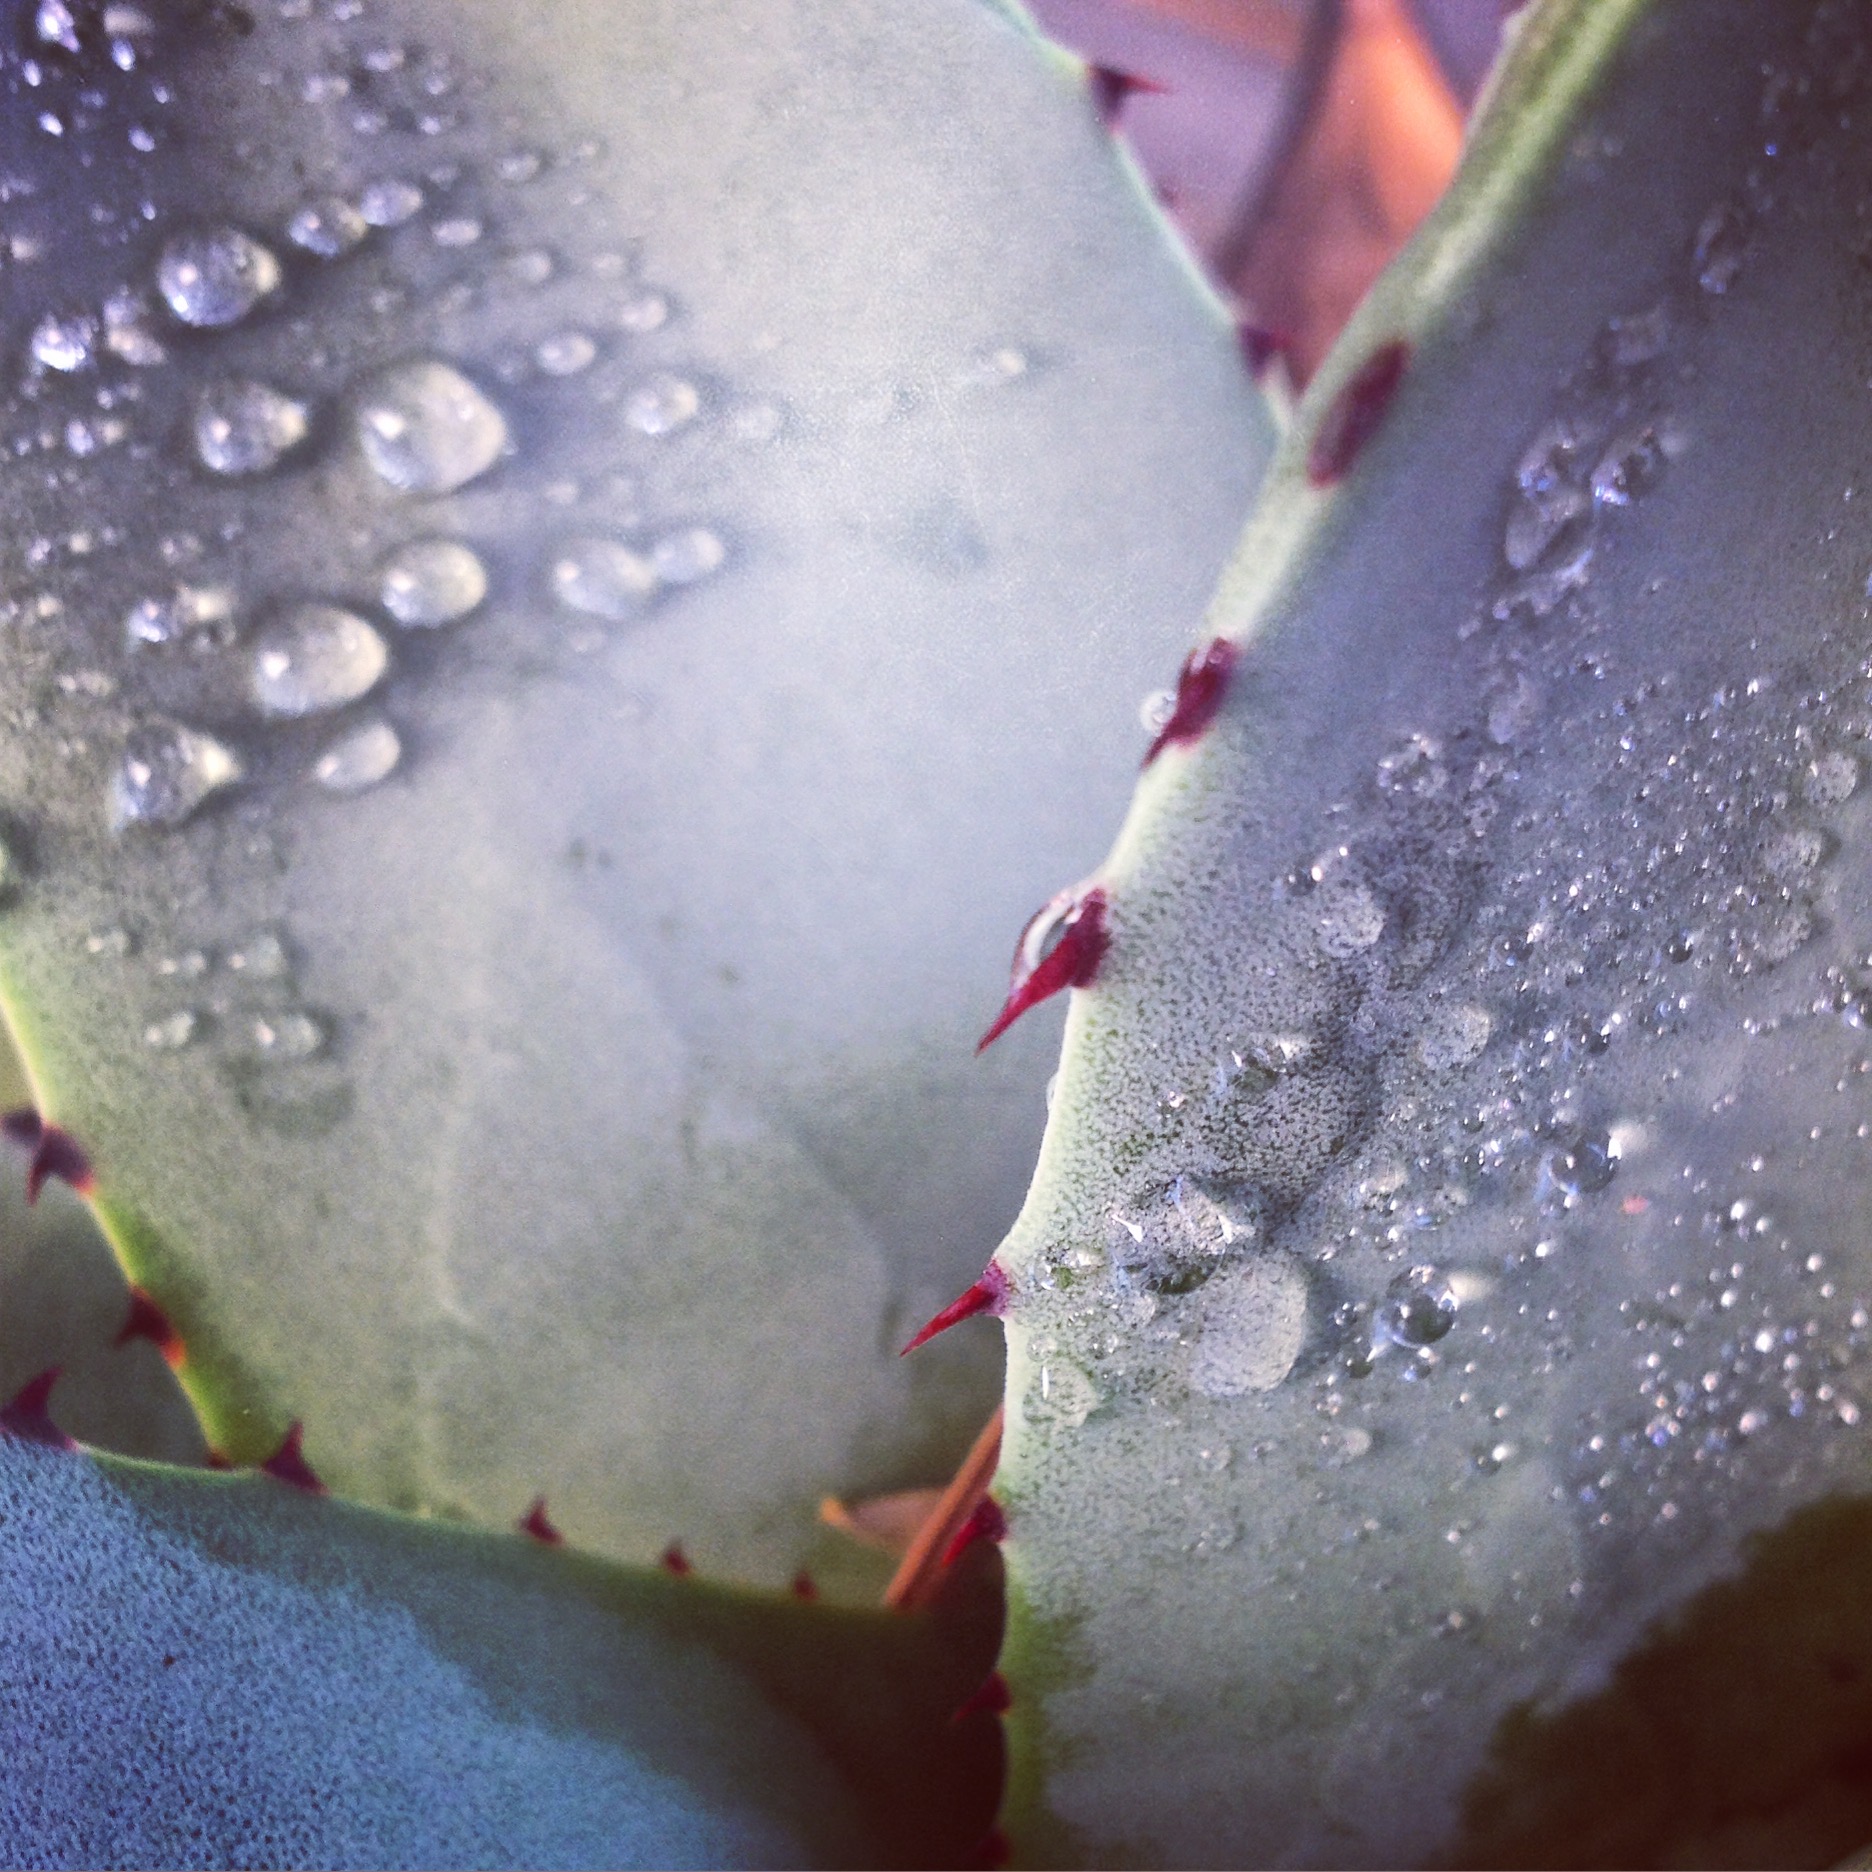 cactus close-up